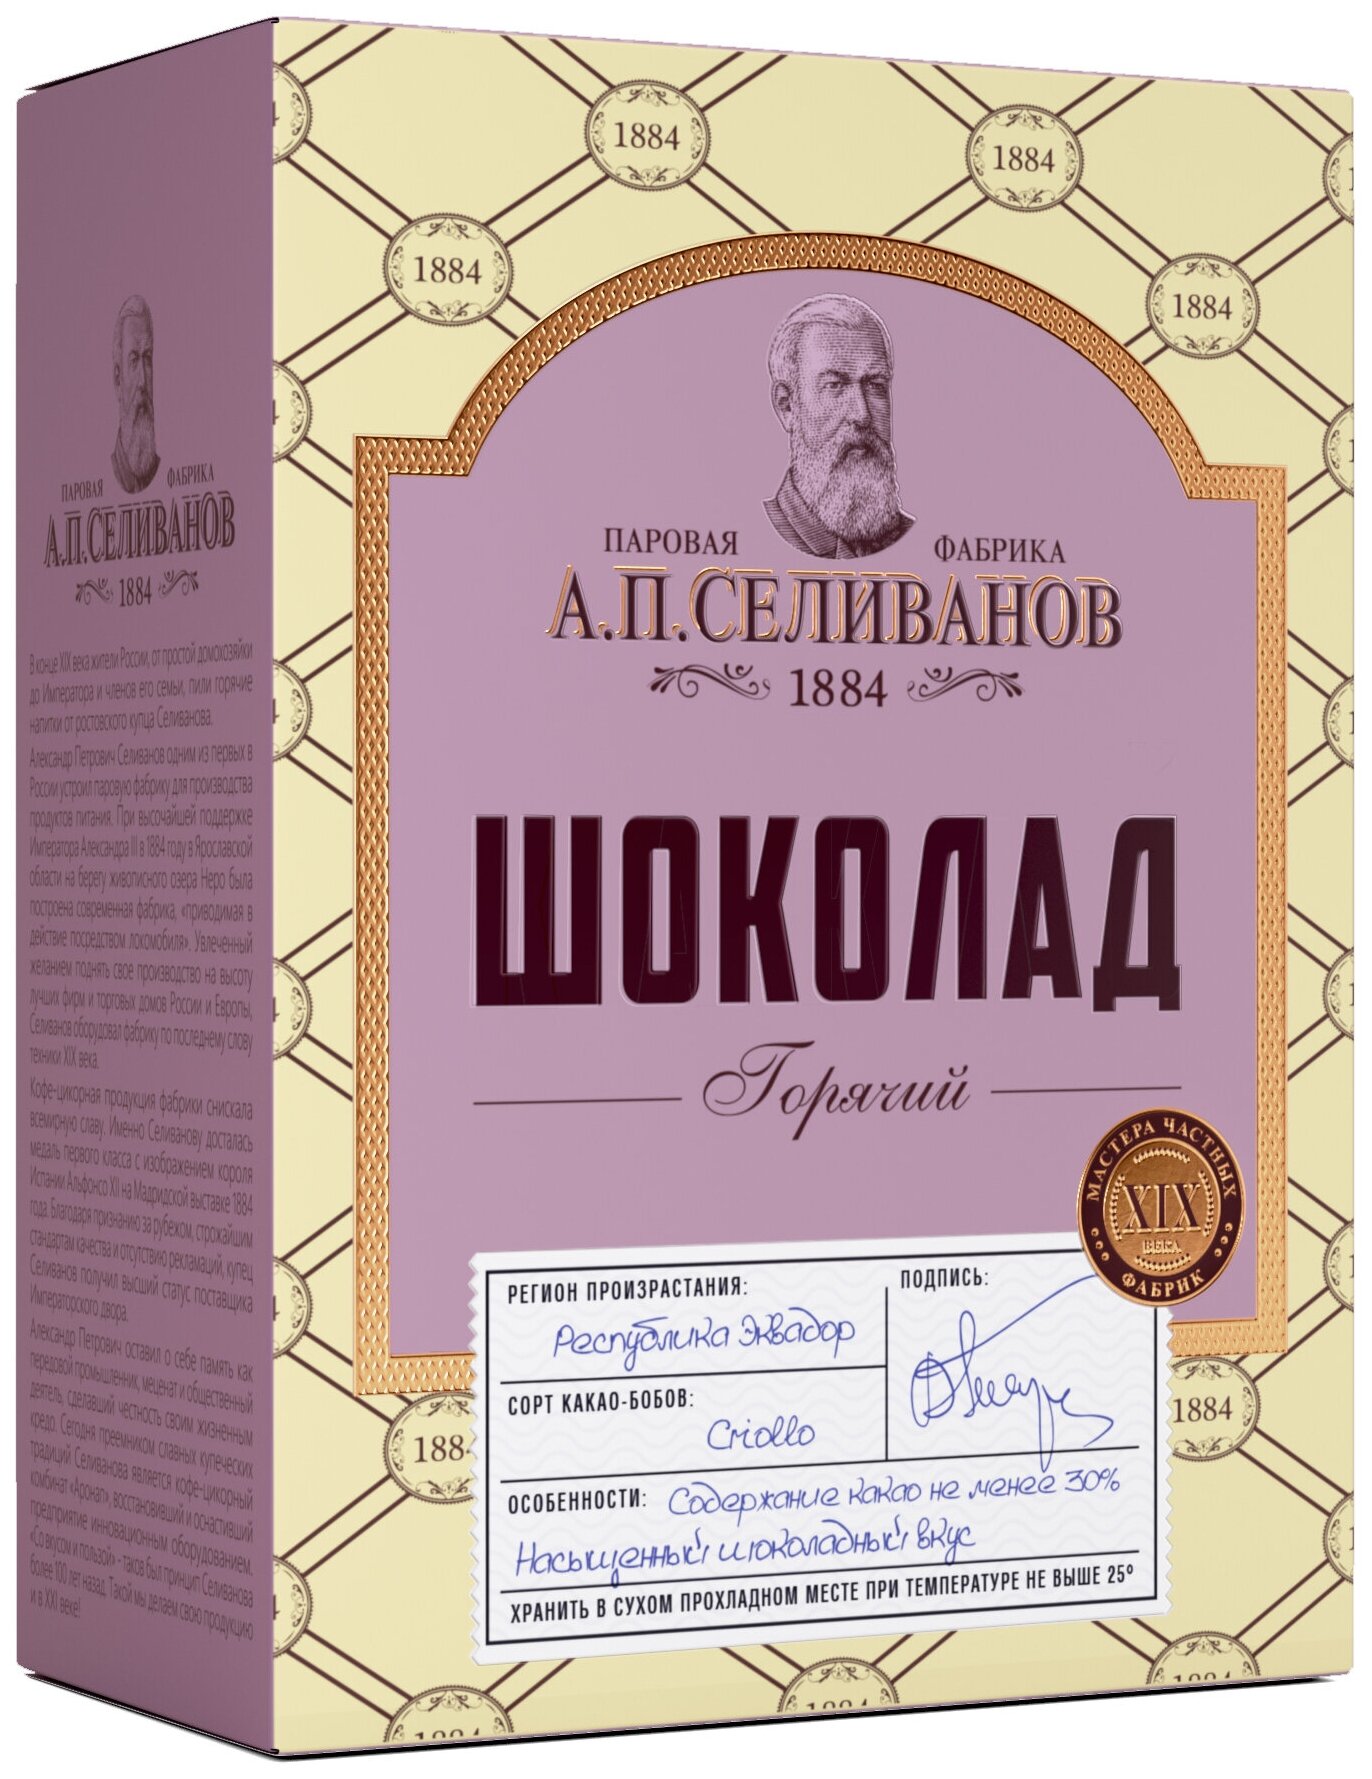 Горячий шоколад А. П. Селиванов 150 гр